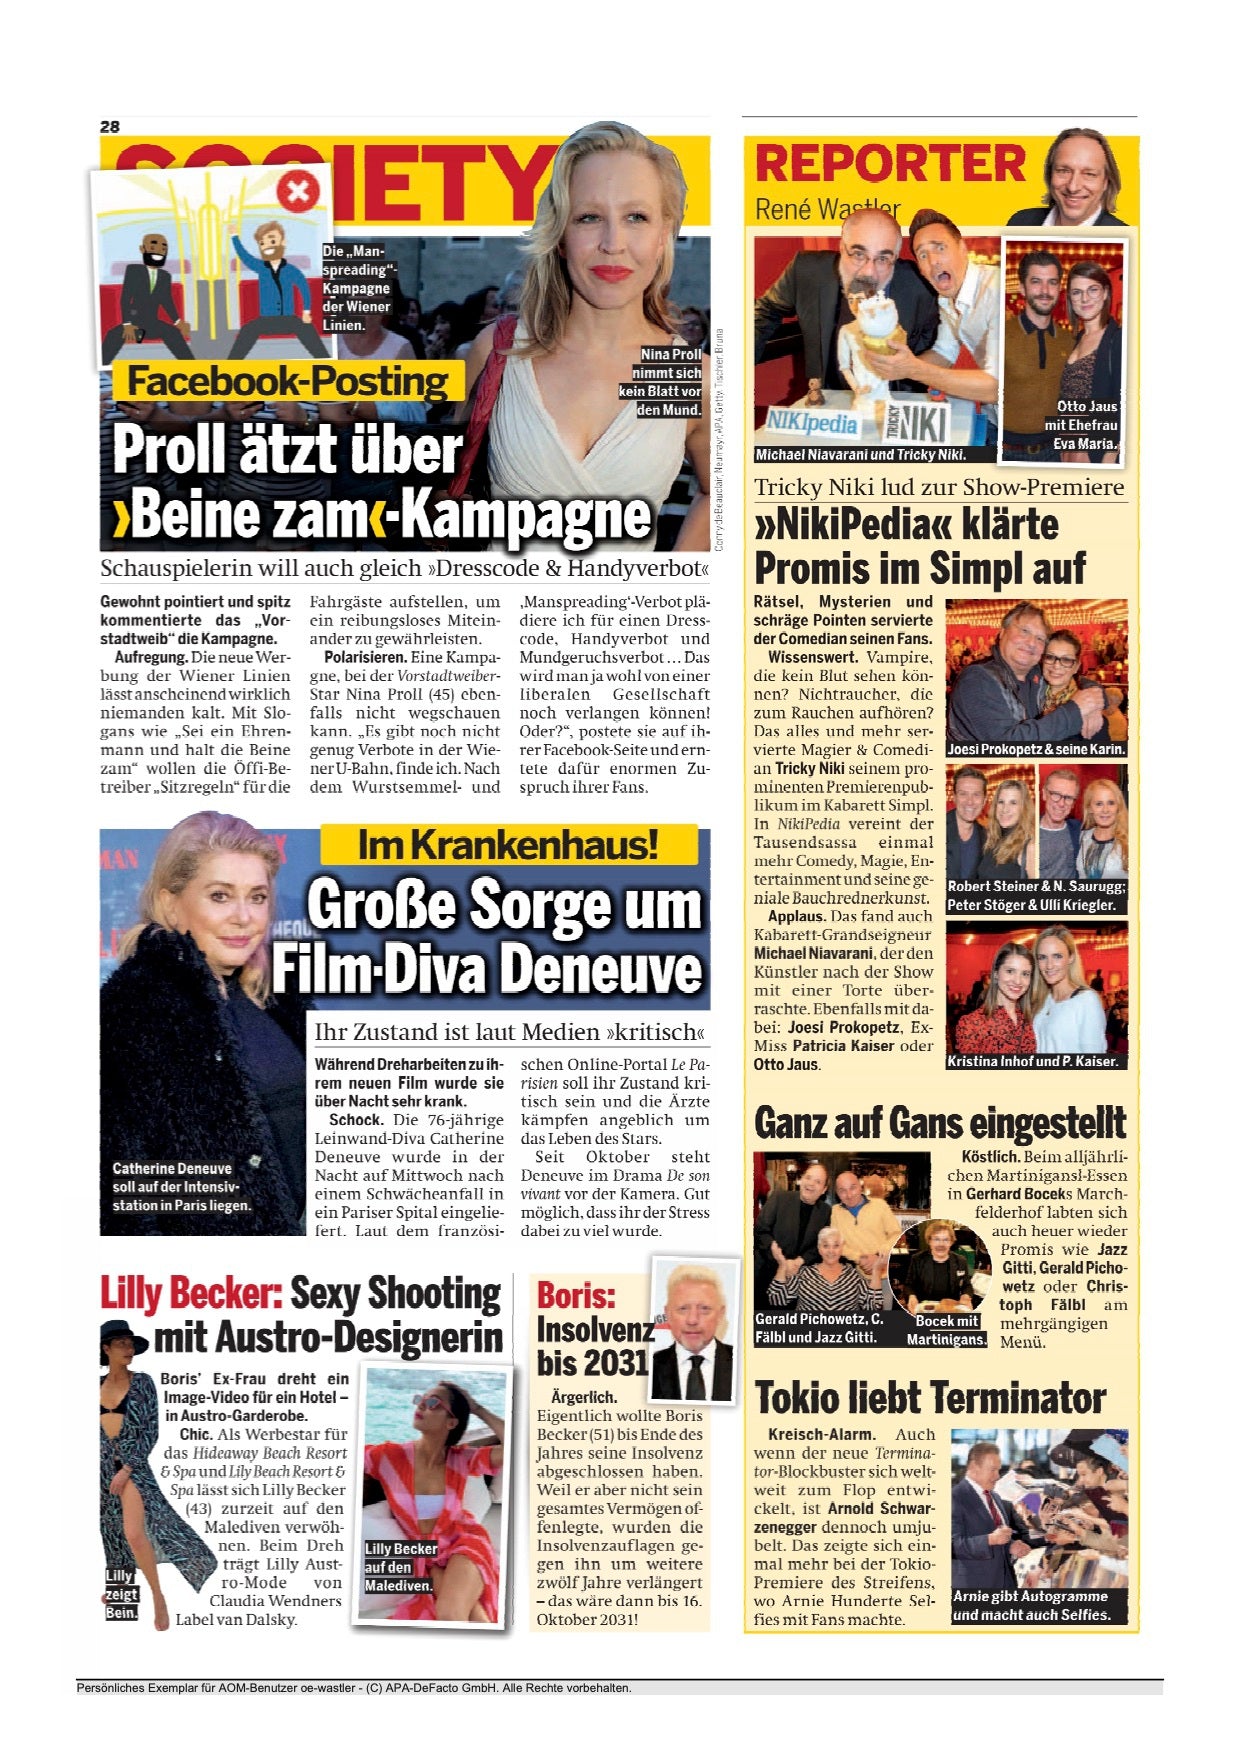 van Dalsky & Lilly Becker featured at  "Österreich" Newspaper